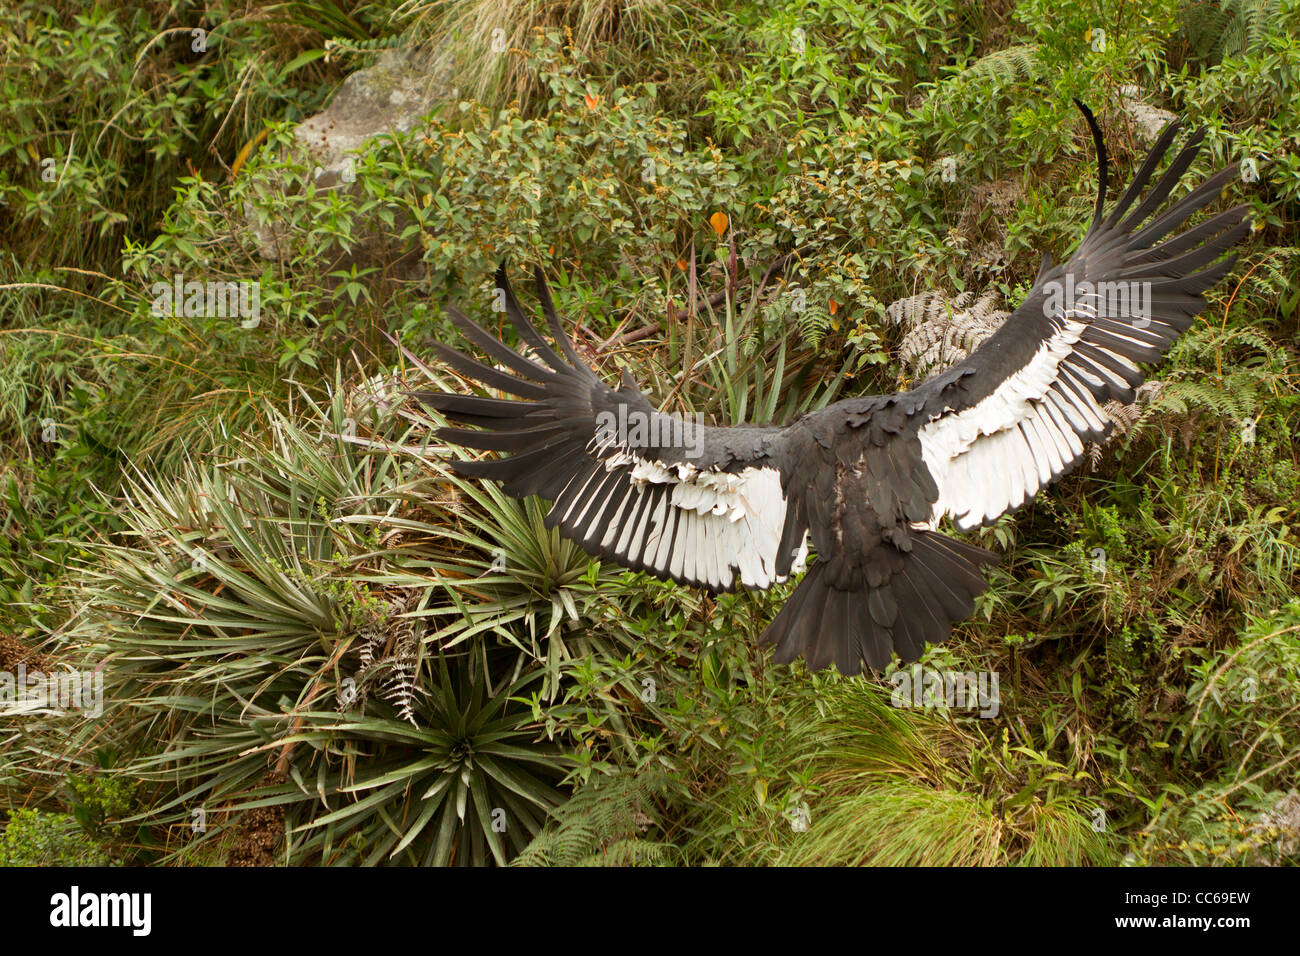 Il condor andino è un grande avvoltoio nero con un collare di piume bianche che circonda la base del collo e soprattutto nel maschio grande chiazza bianca Foto Stock